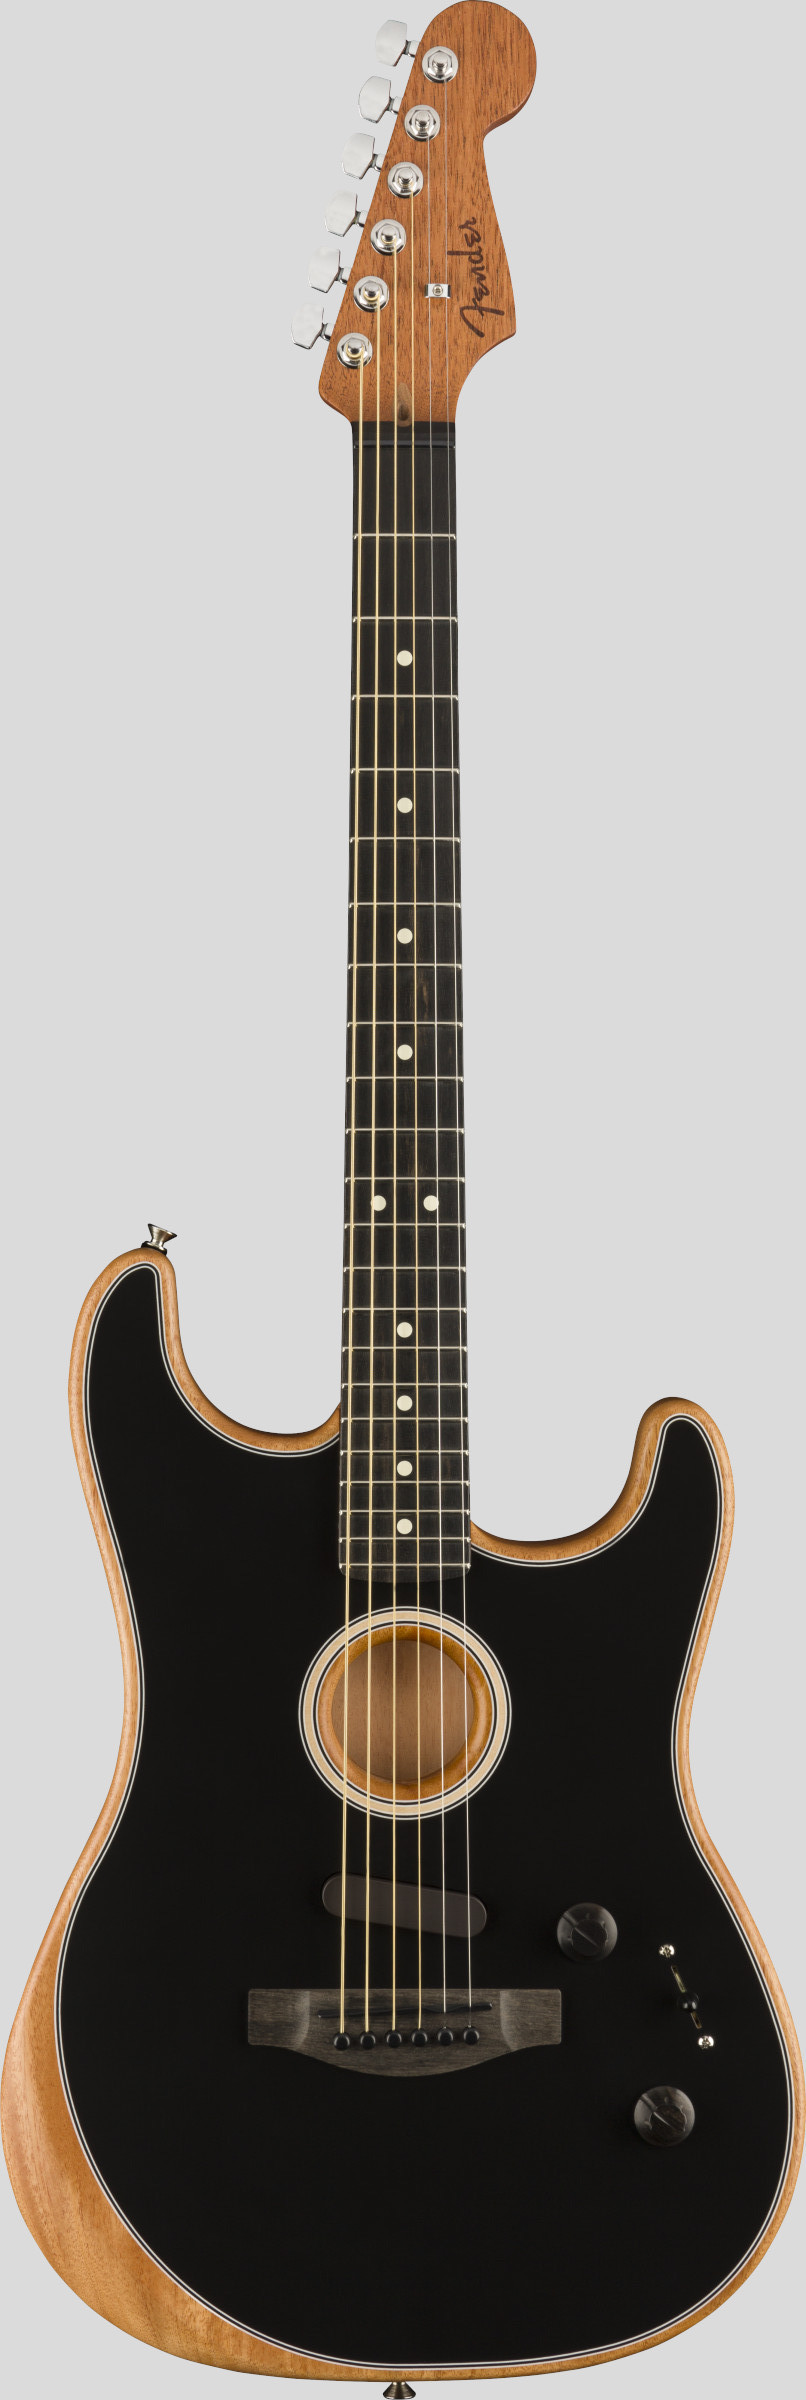 Fender American Acoustasonic Stratocaster Black 1